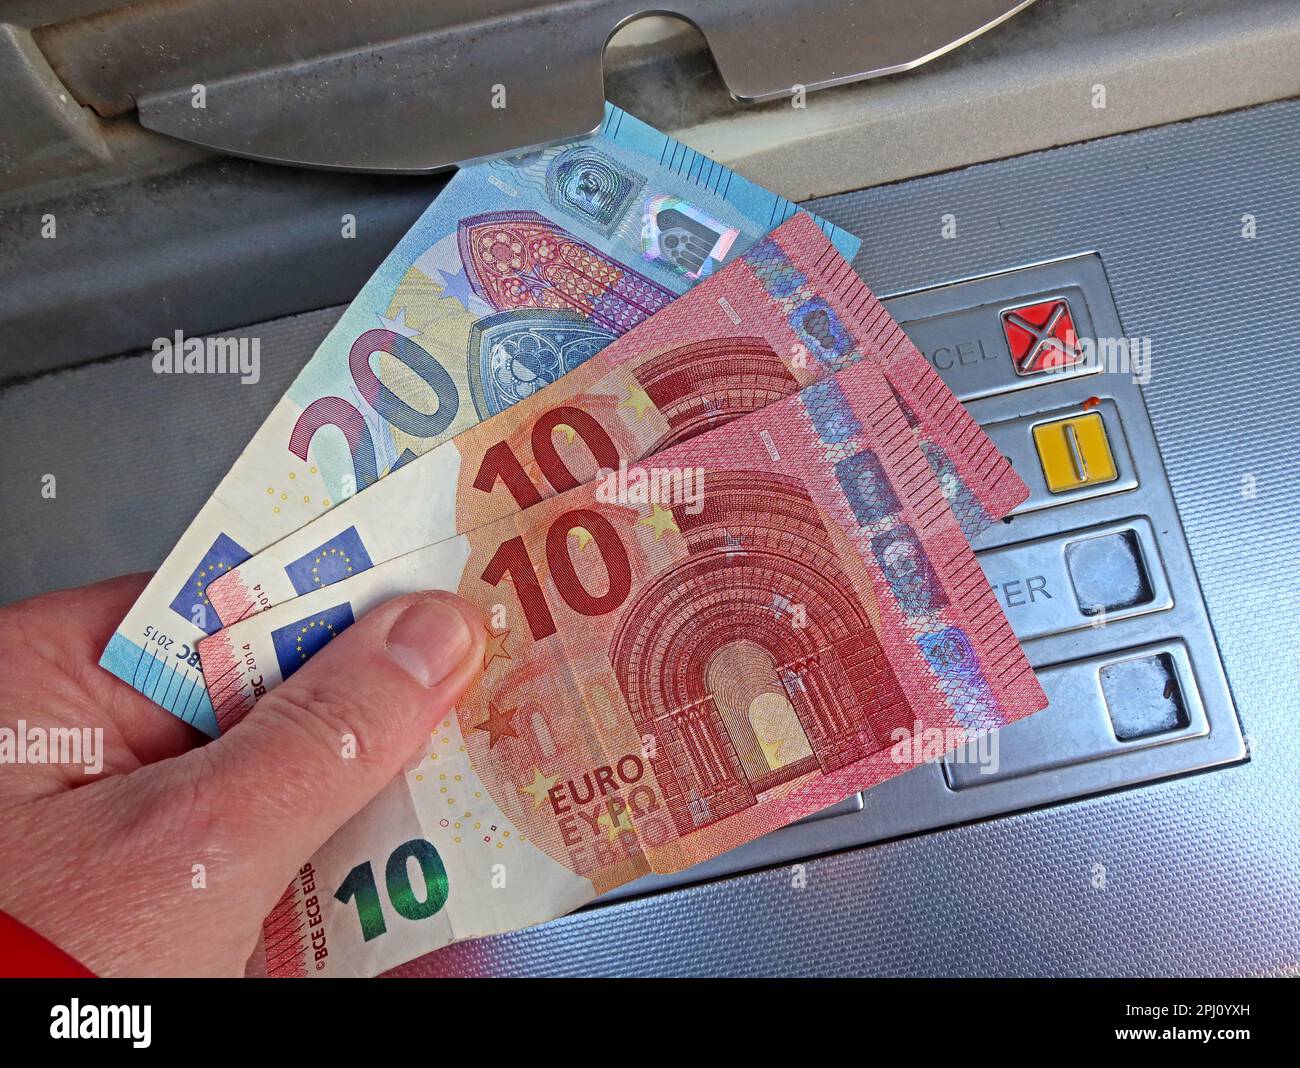 Billets en euros de l'UE, frais d'un distributeur de billets, Dublin, Eire, Irlande Banque D'Images